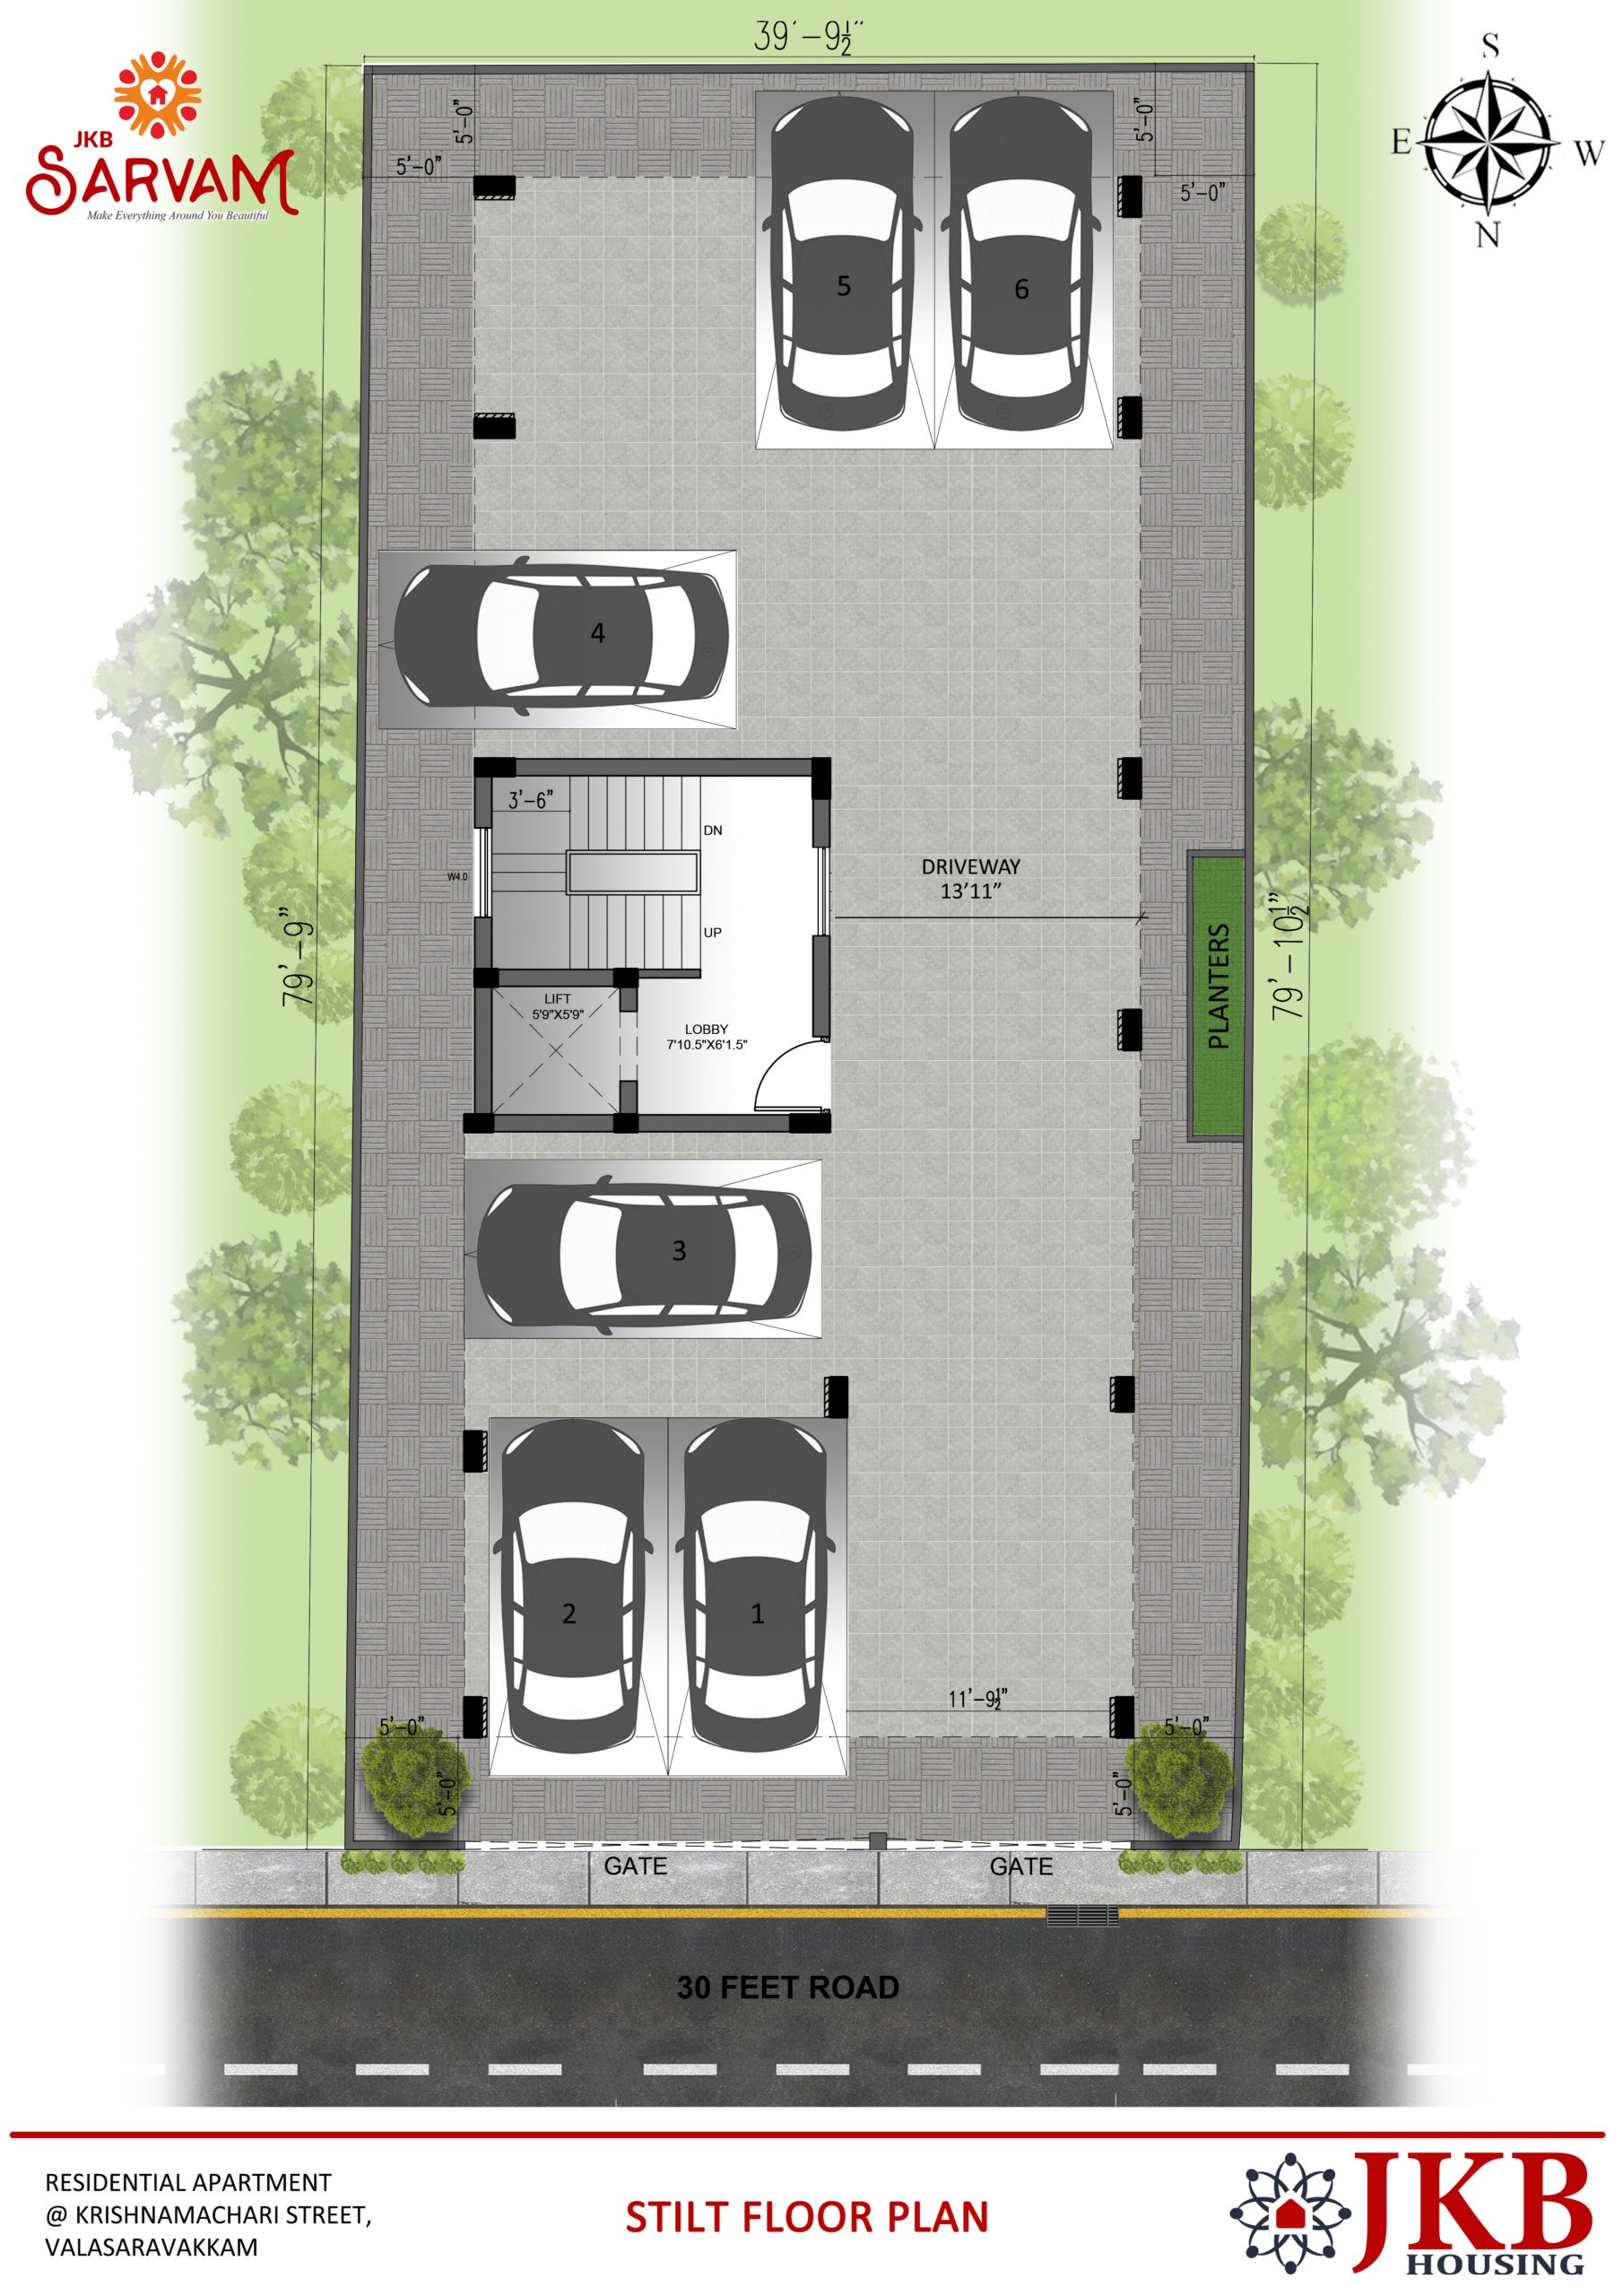 JKB Sarvam - Stilt floor plan